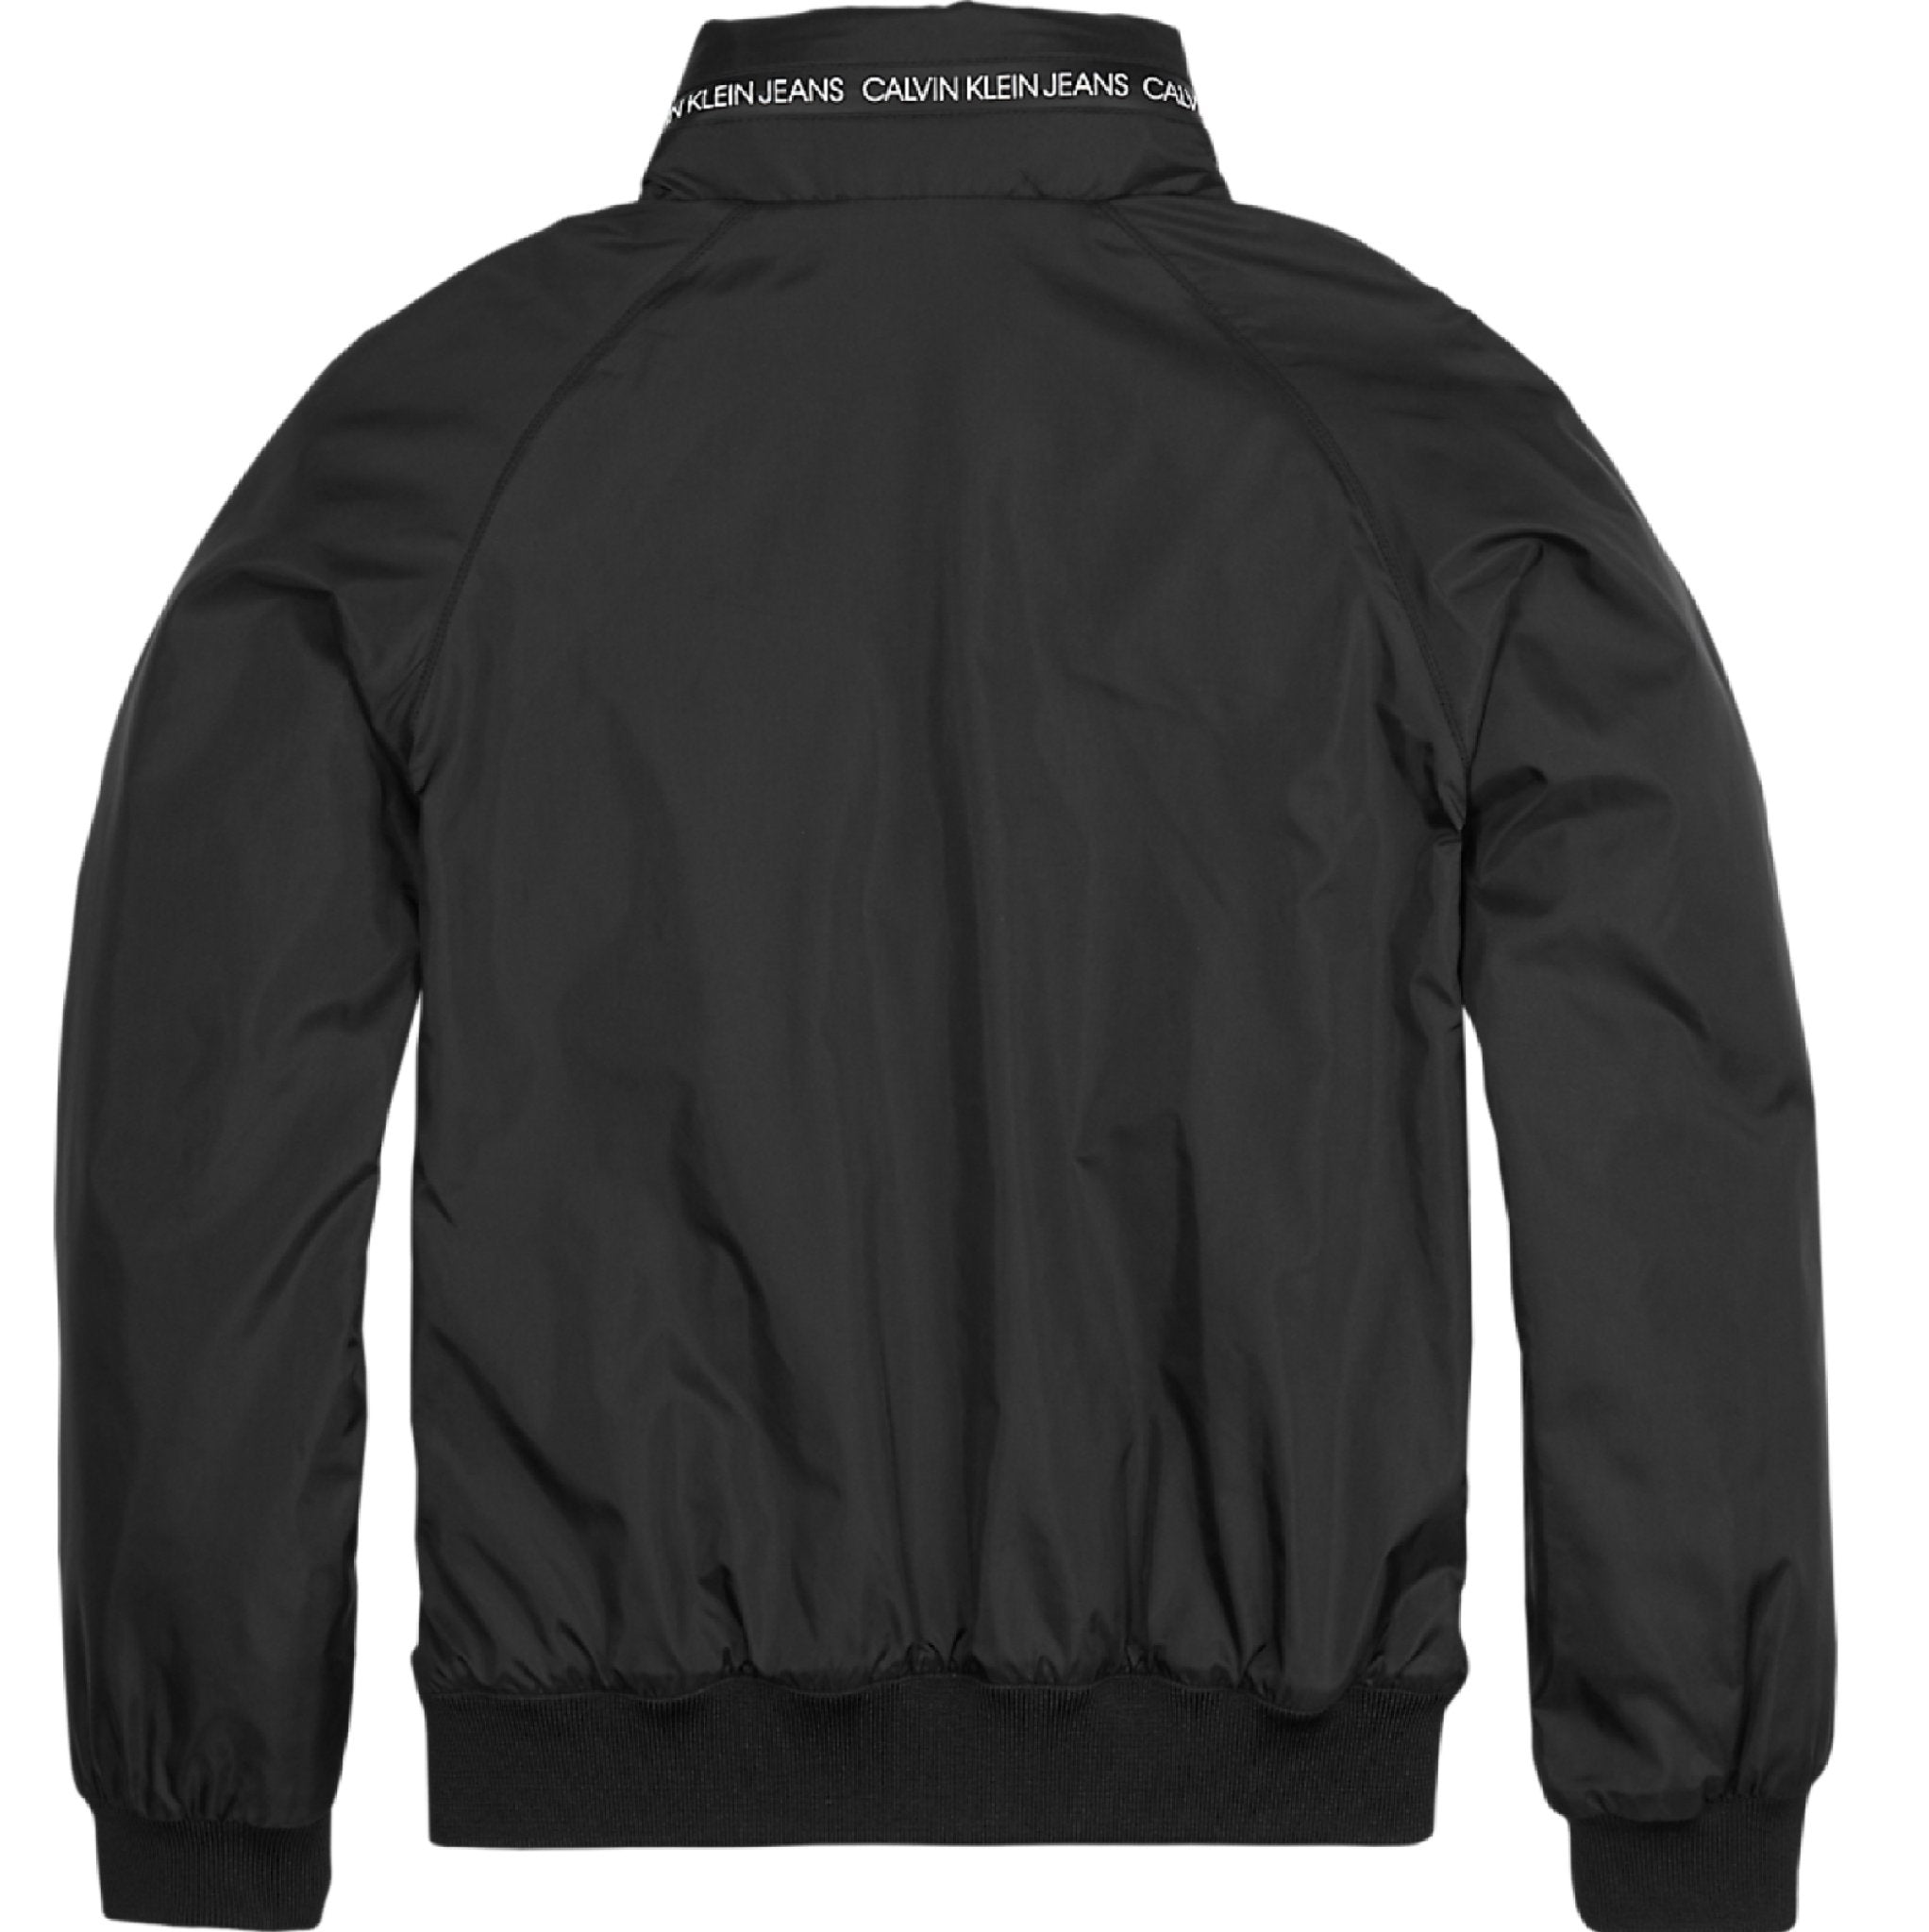 Jongens Essential Light Jacket van Calvin Klein in de kleur Zwart in maat 176.